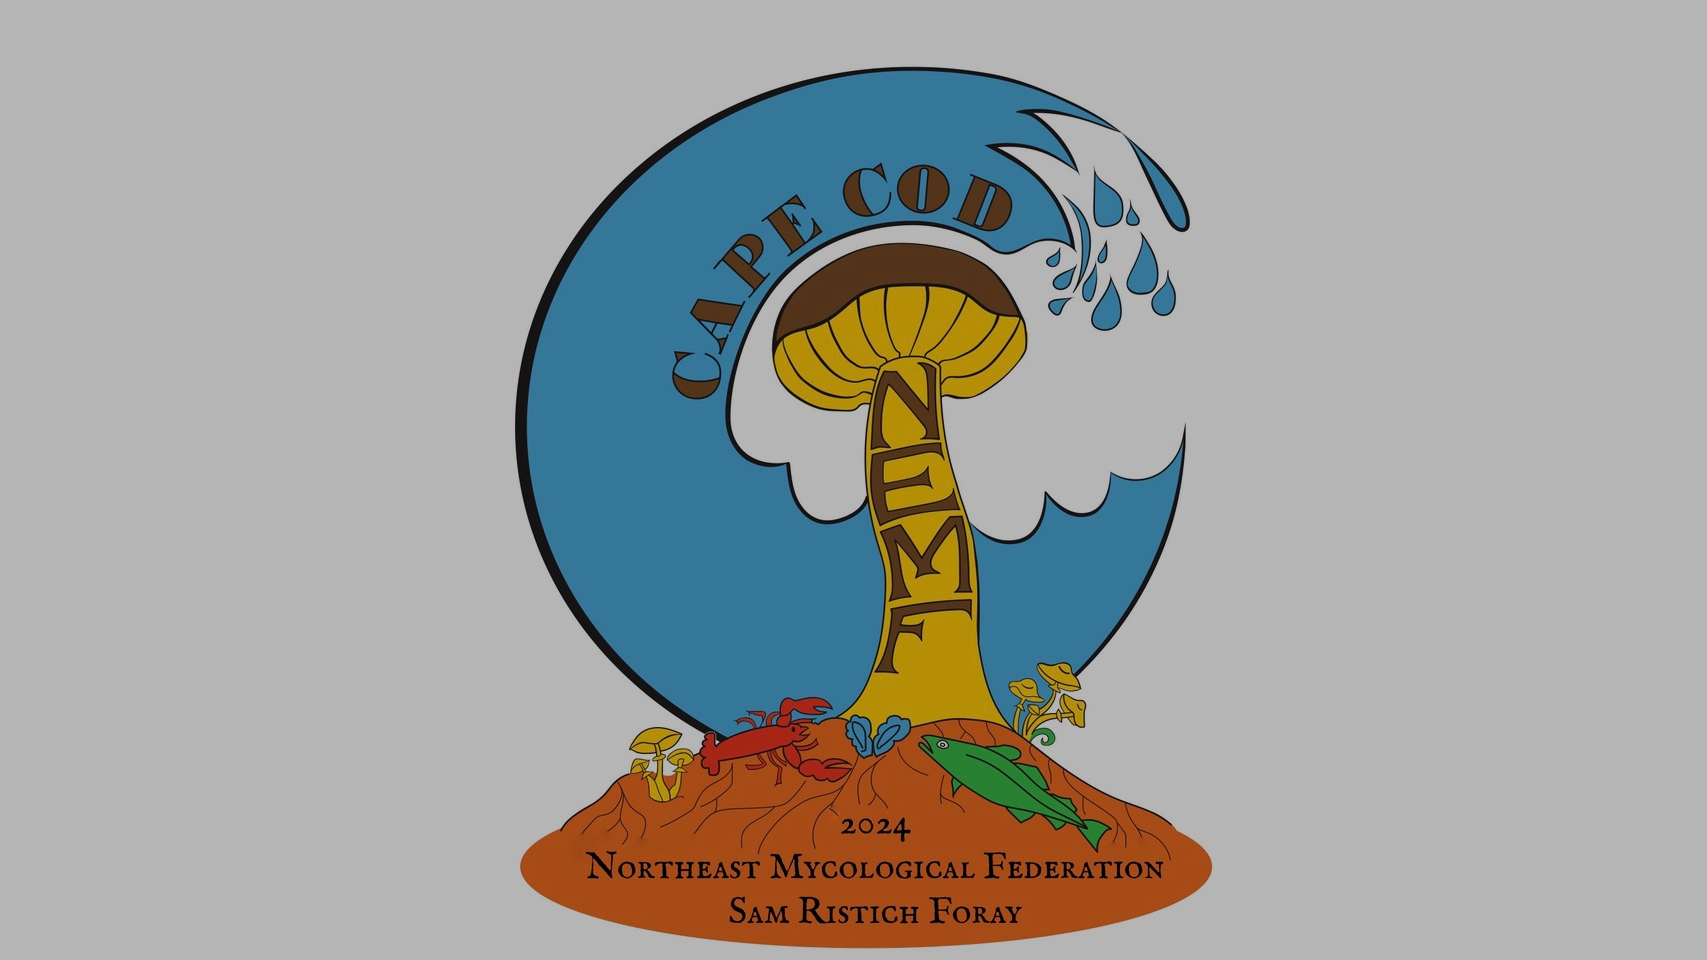 NEMF Logo